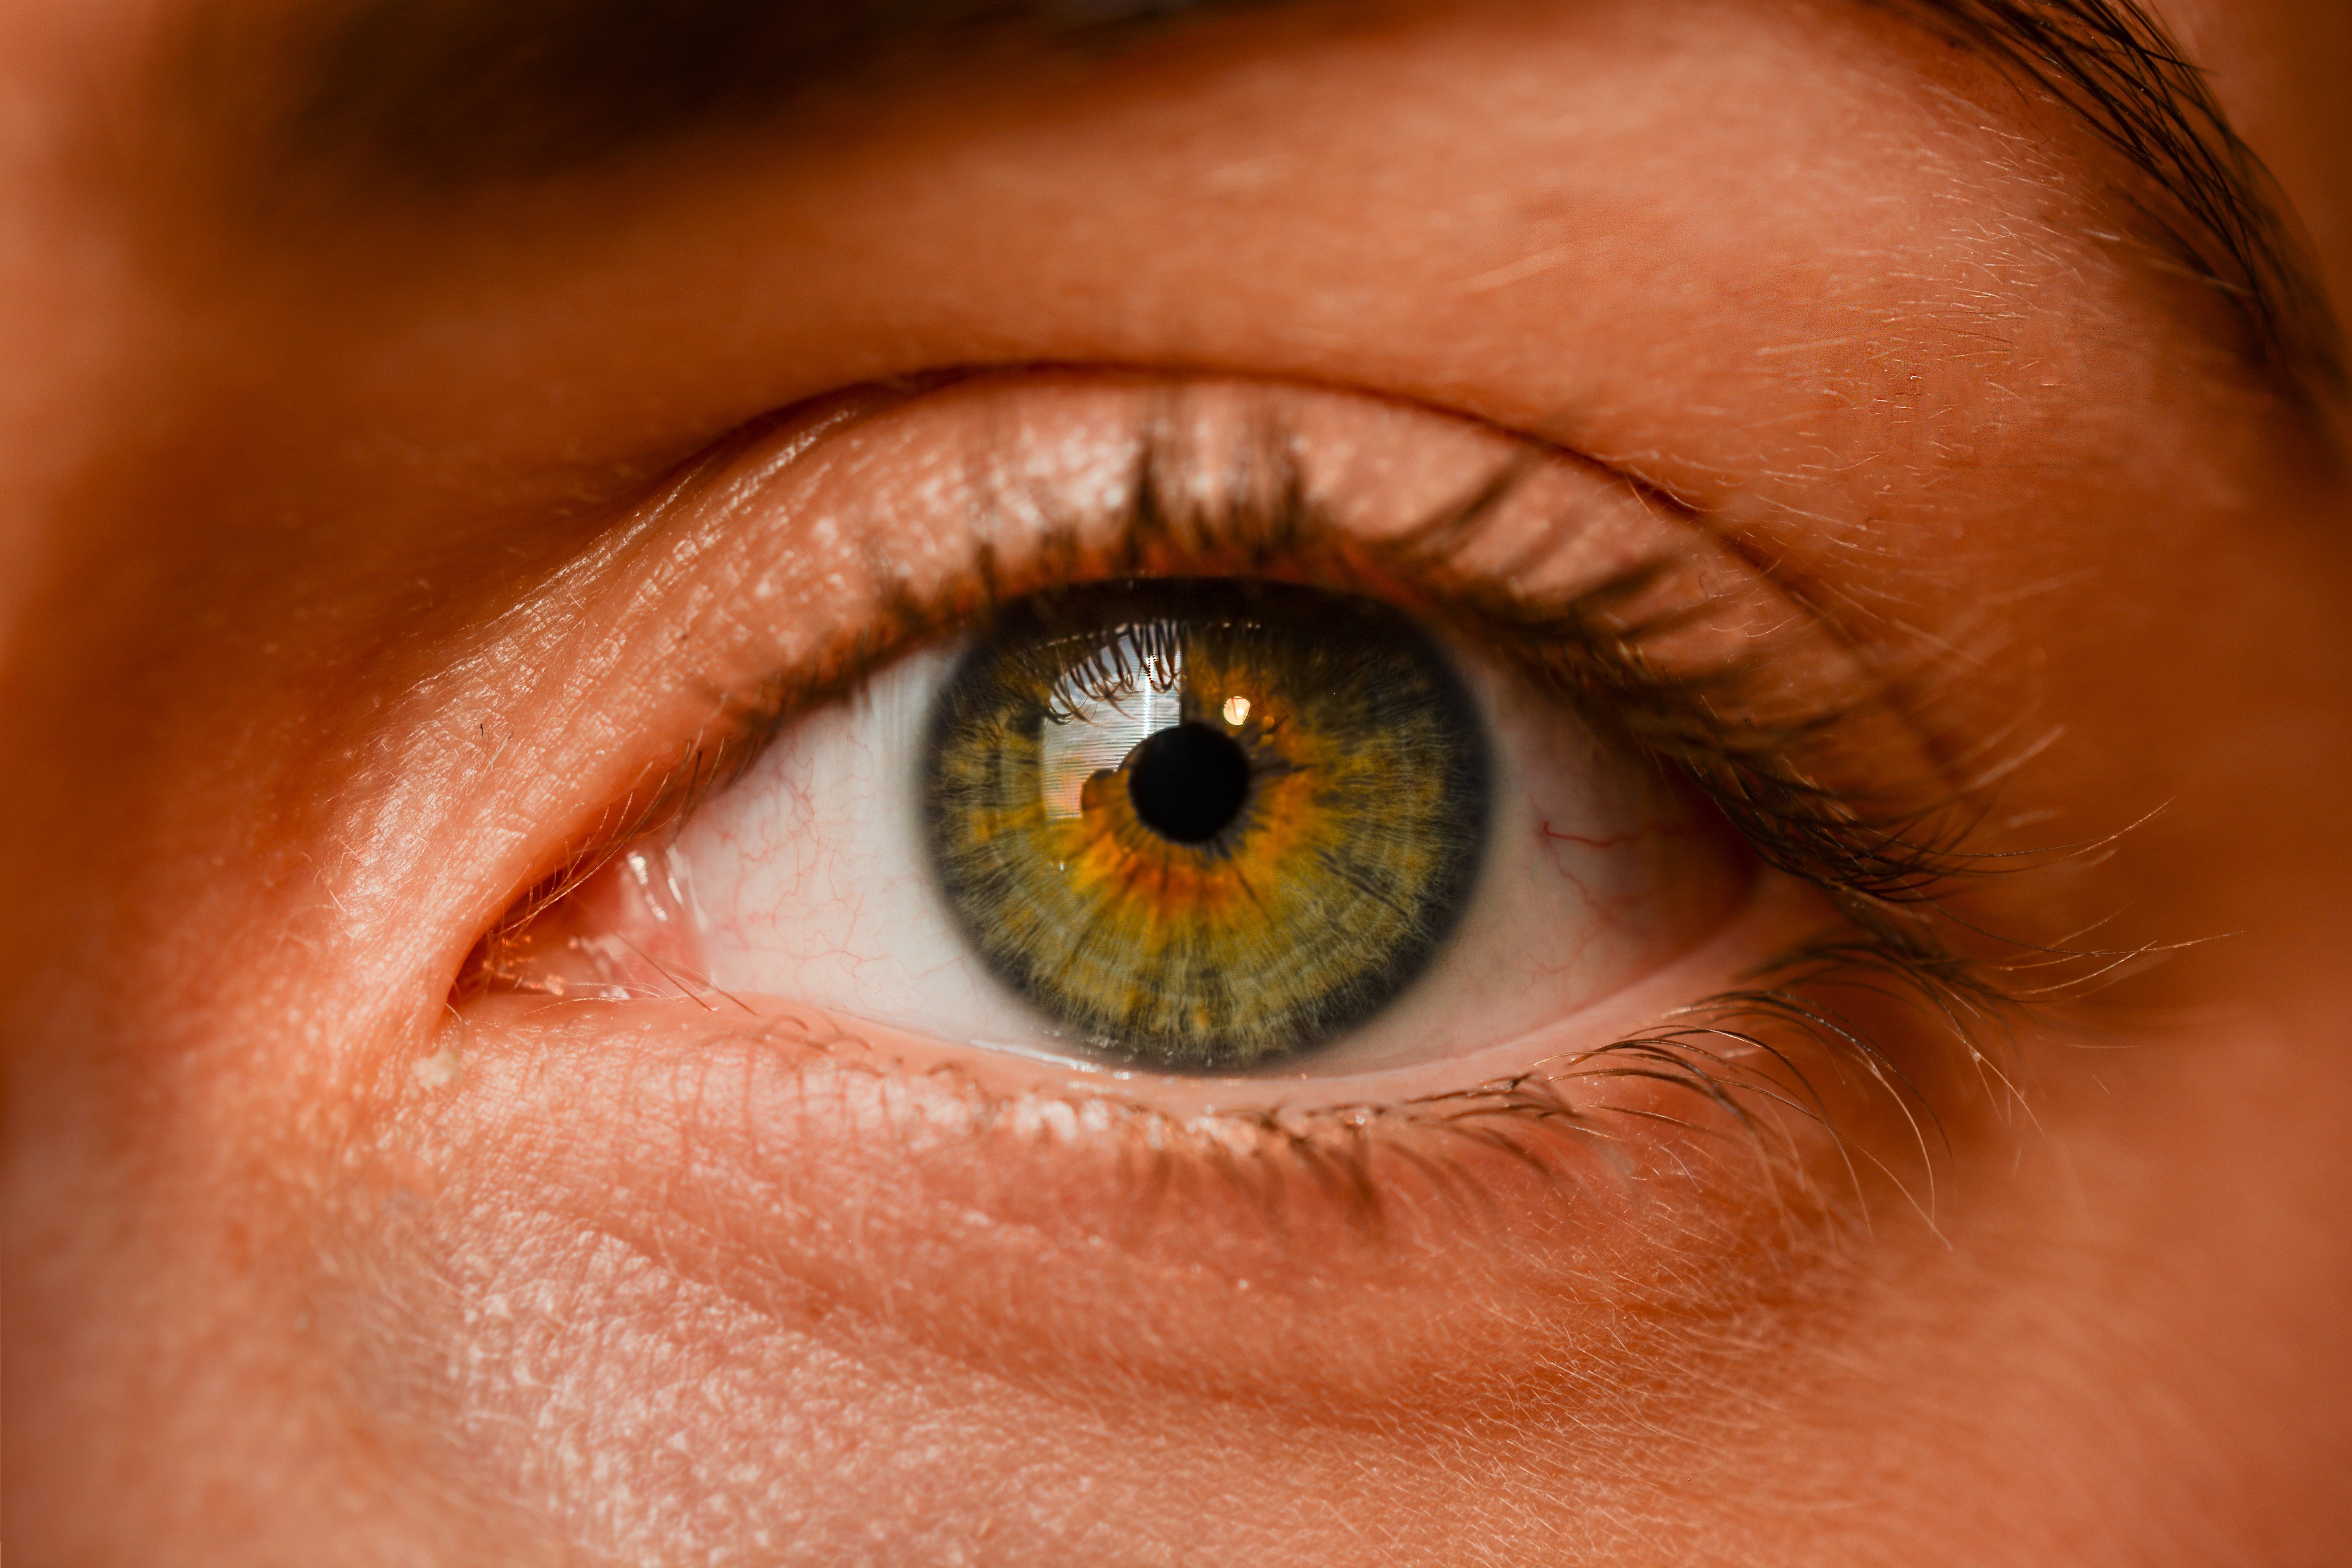 Описание желтых глаз. Хазел цвет глаз. Человеческий глаз. Карие глаза с зеленым оттенком. Глаз крупно.